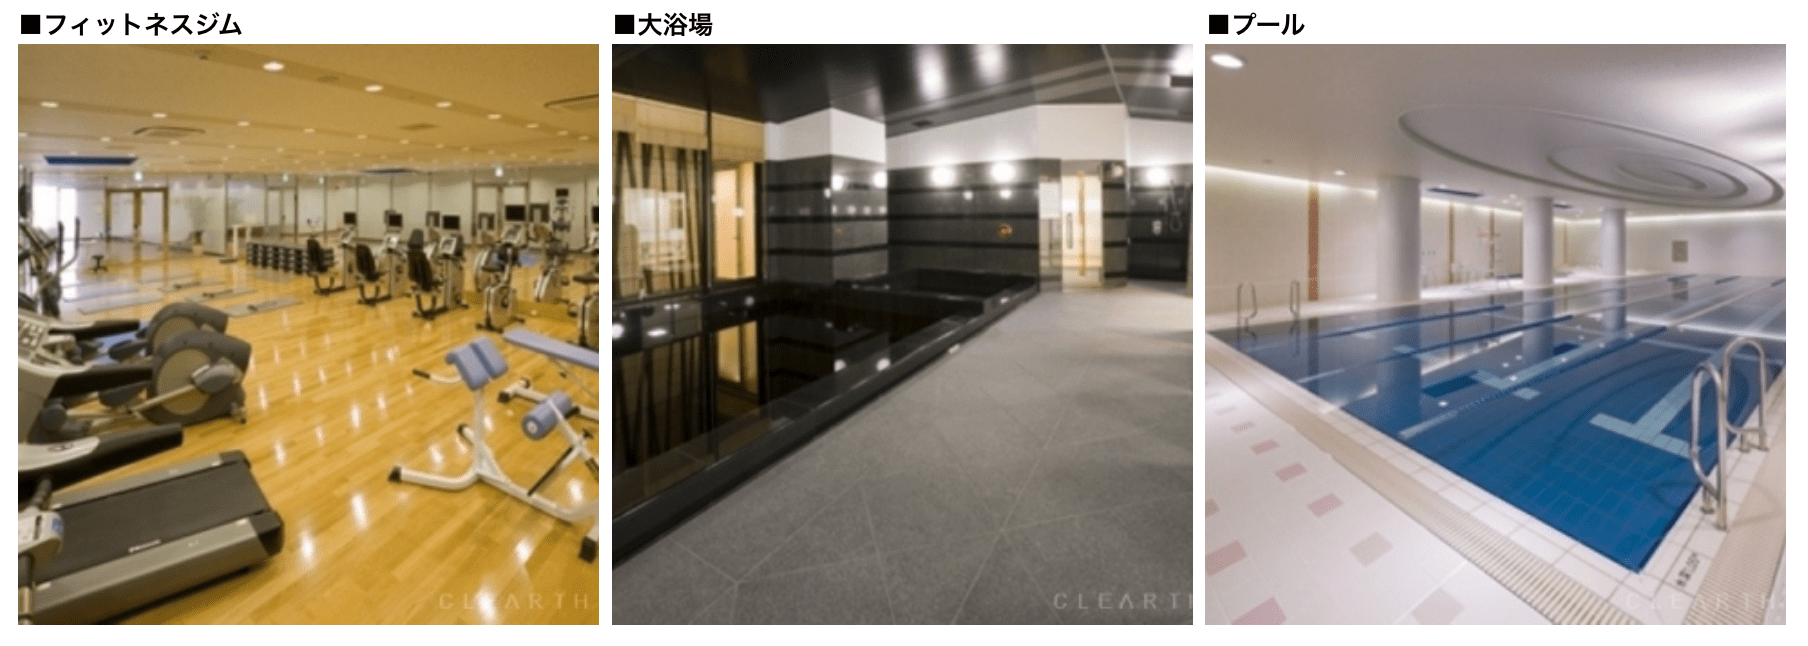 コンシェリア西新宿の共有施設イメージ